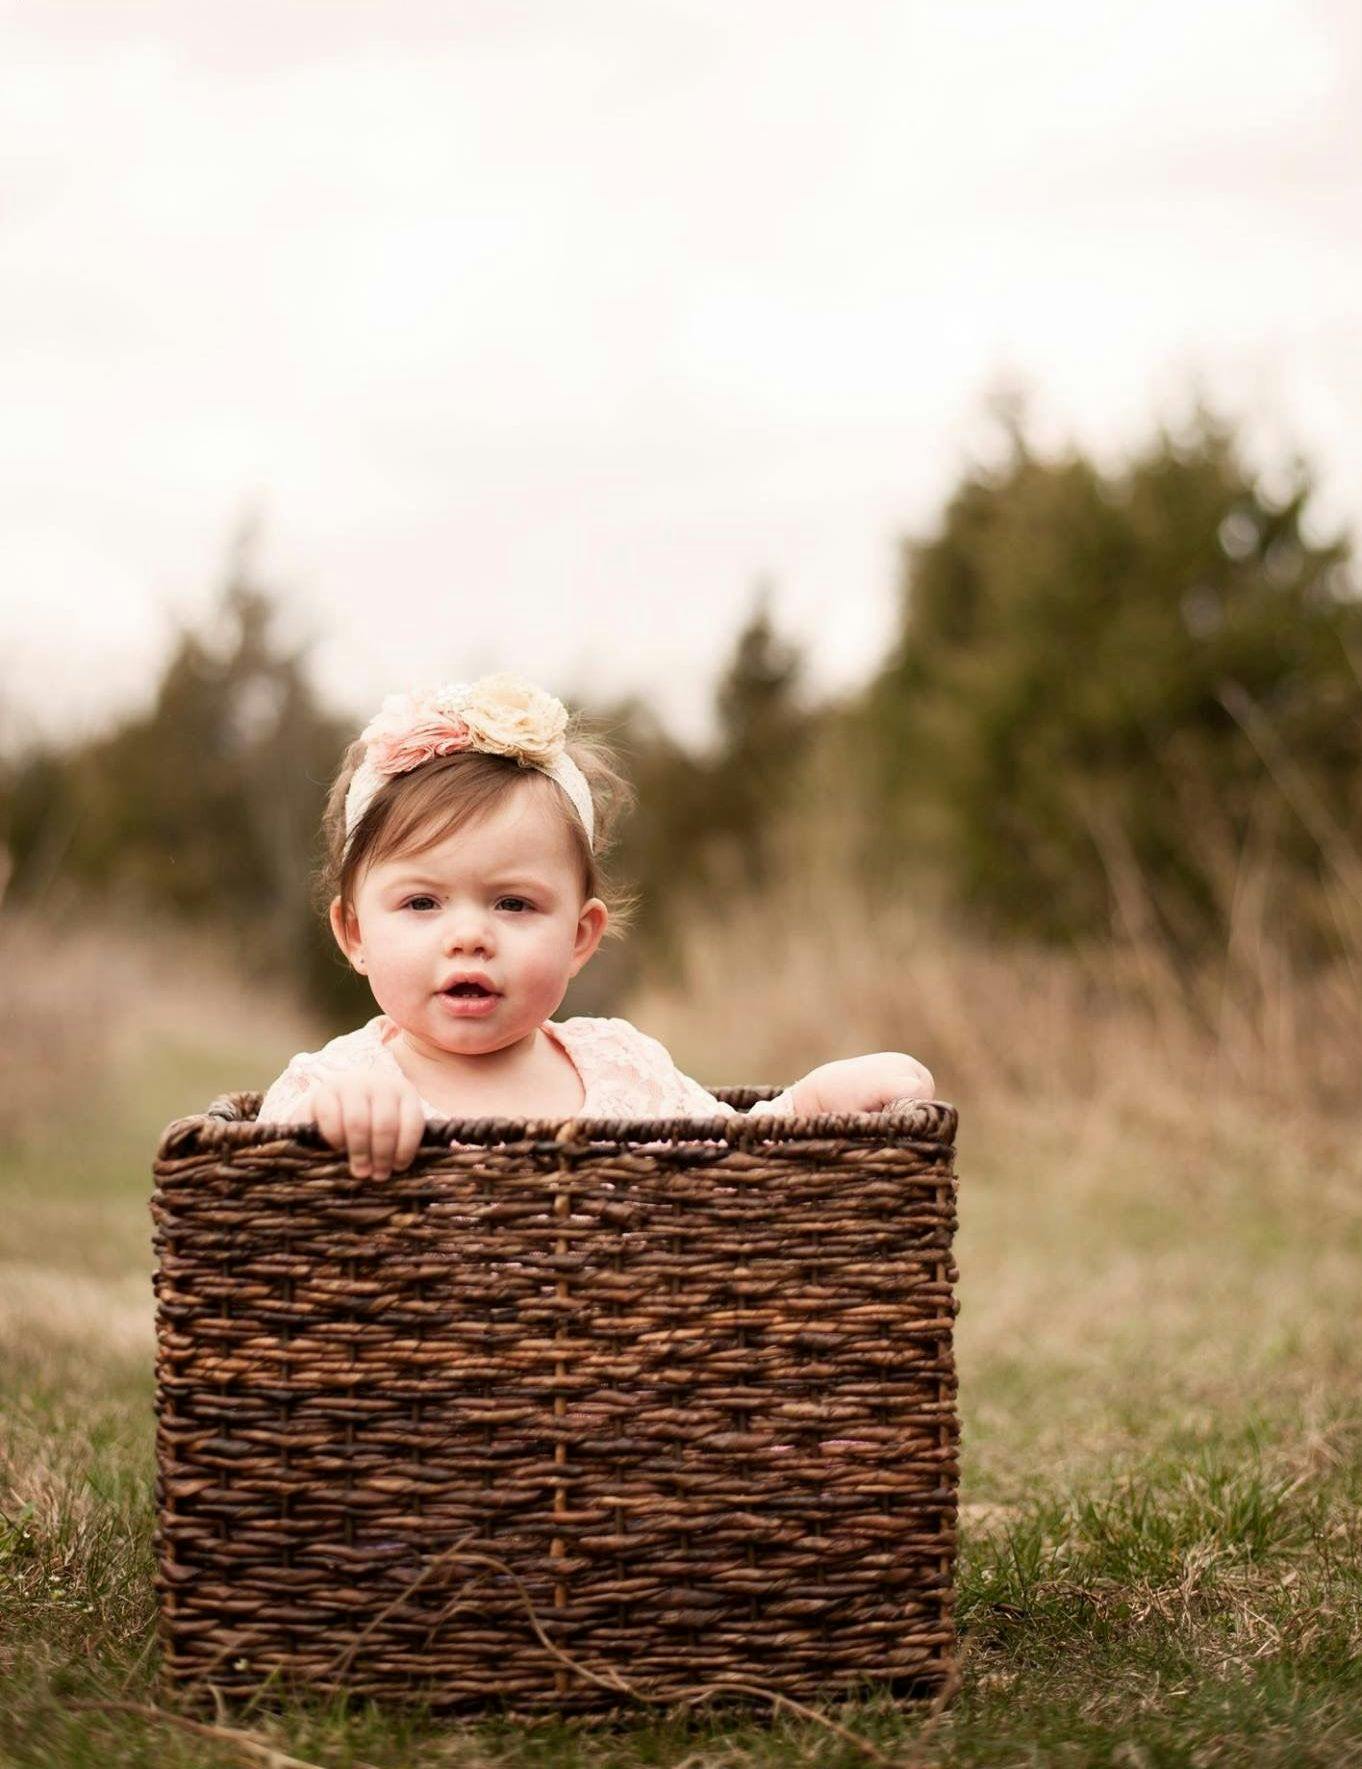 baby photoshoot ideas outdoor